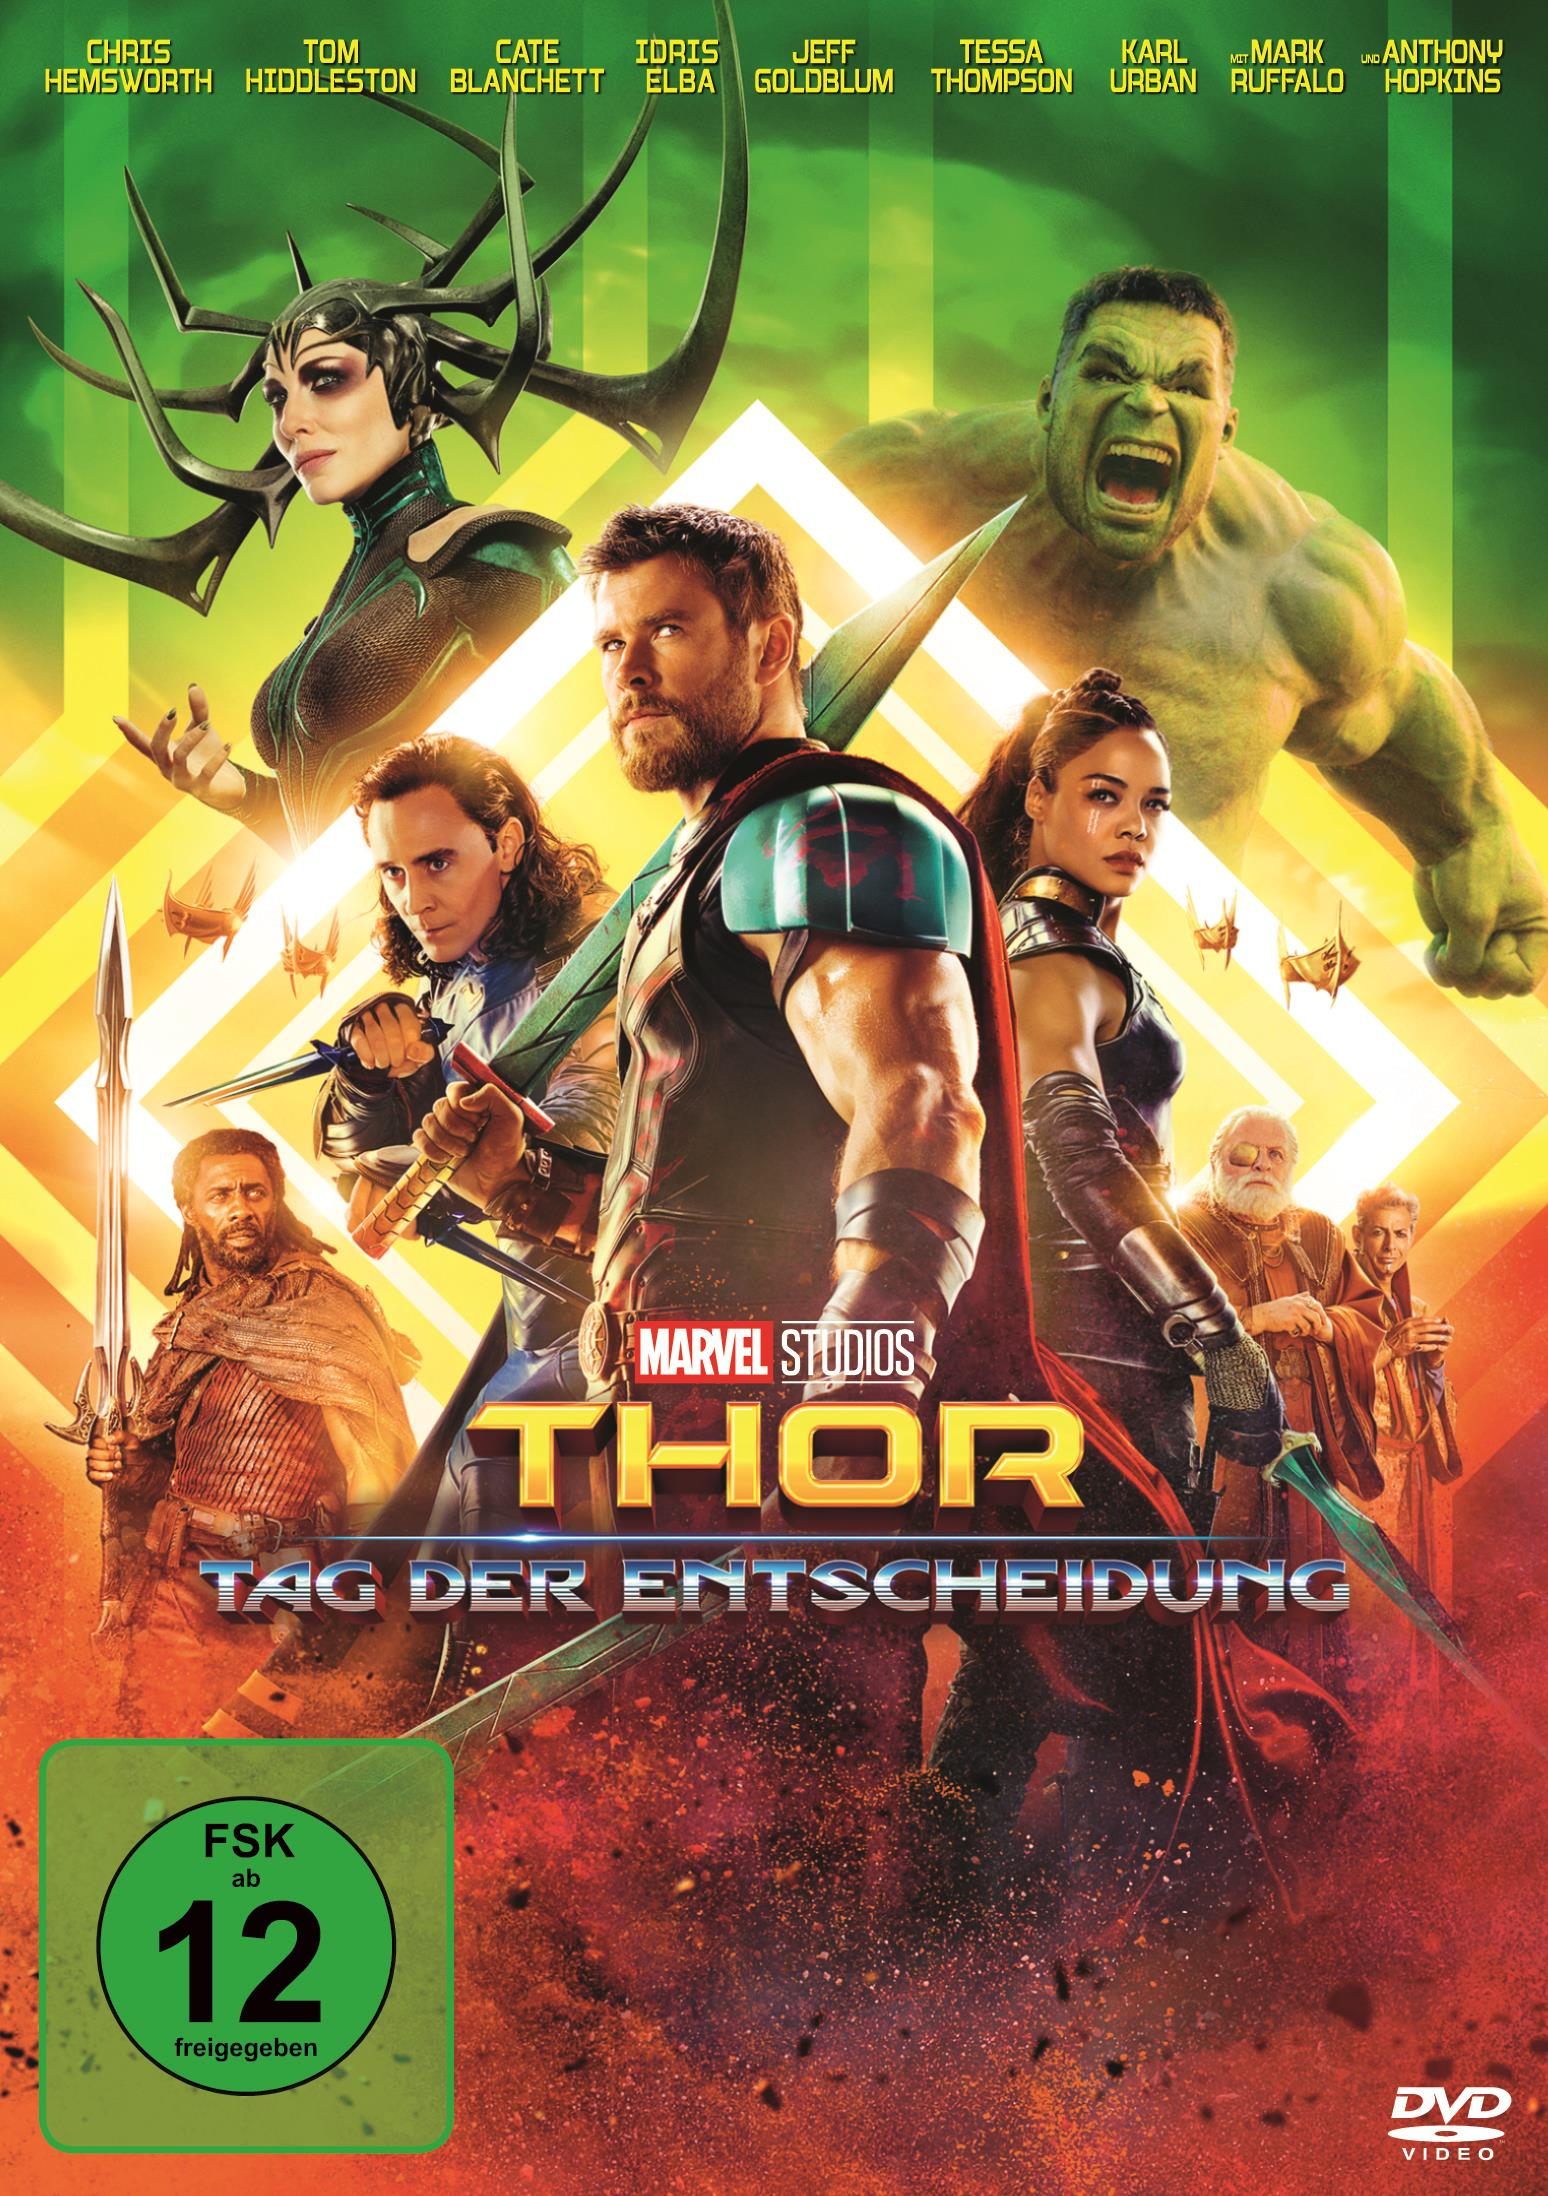 Entscheidung DVD Tag der Thor: